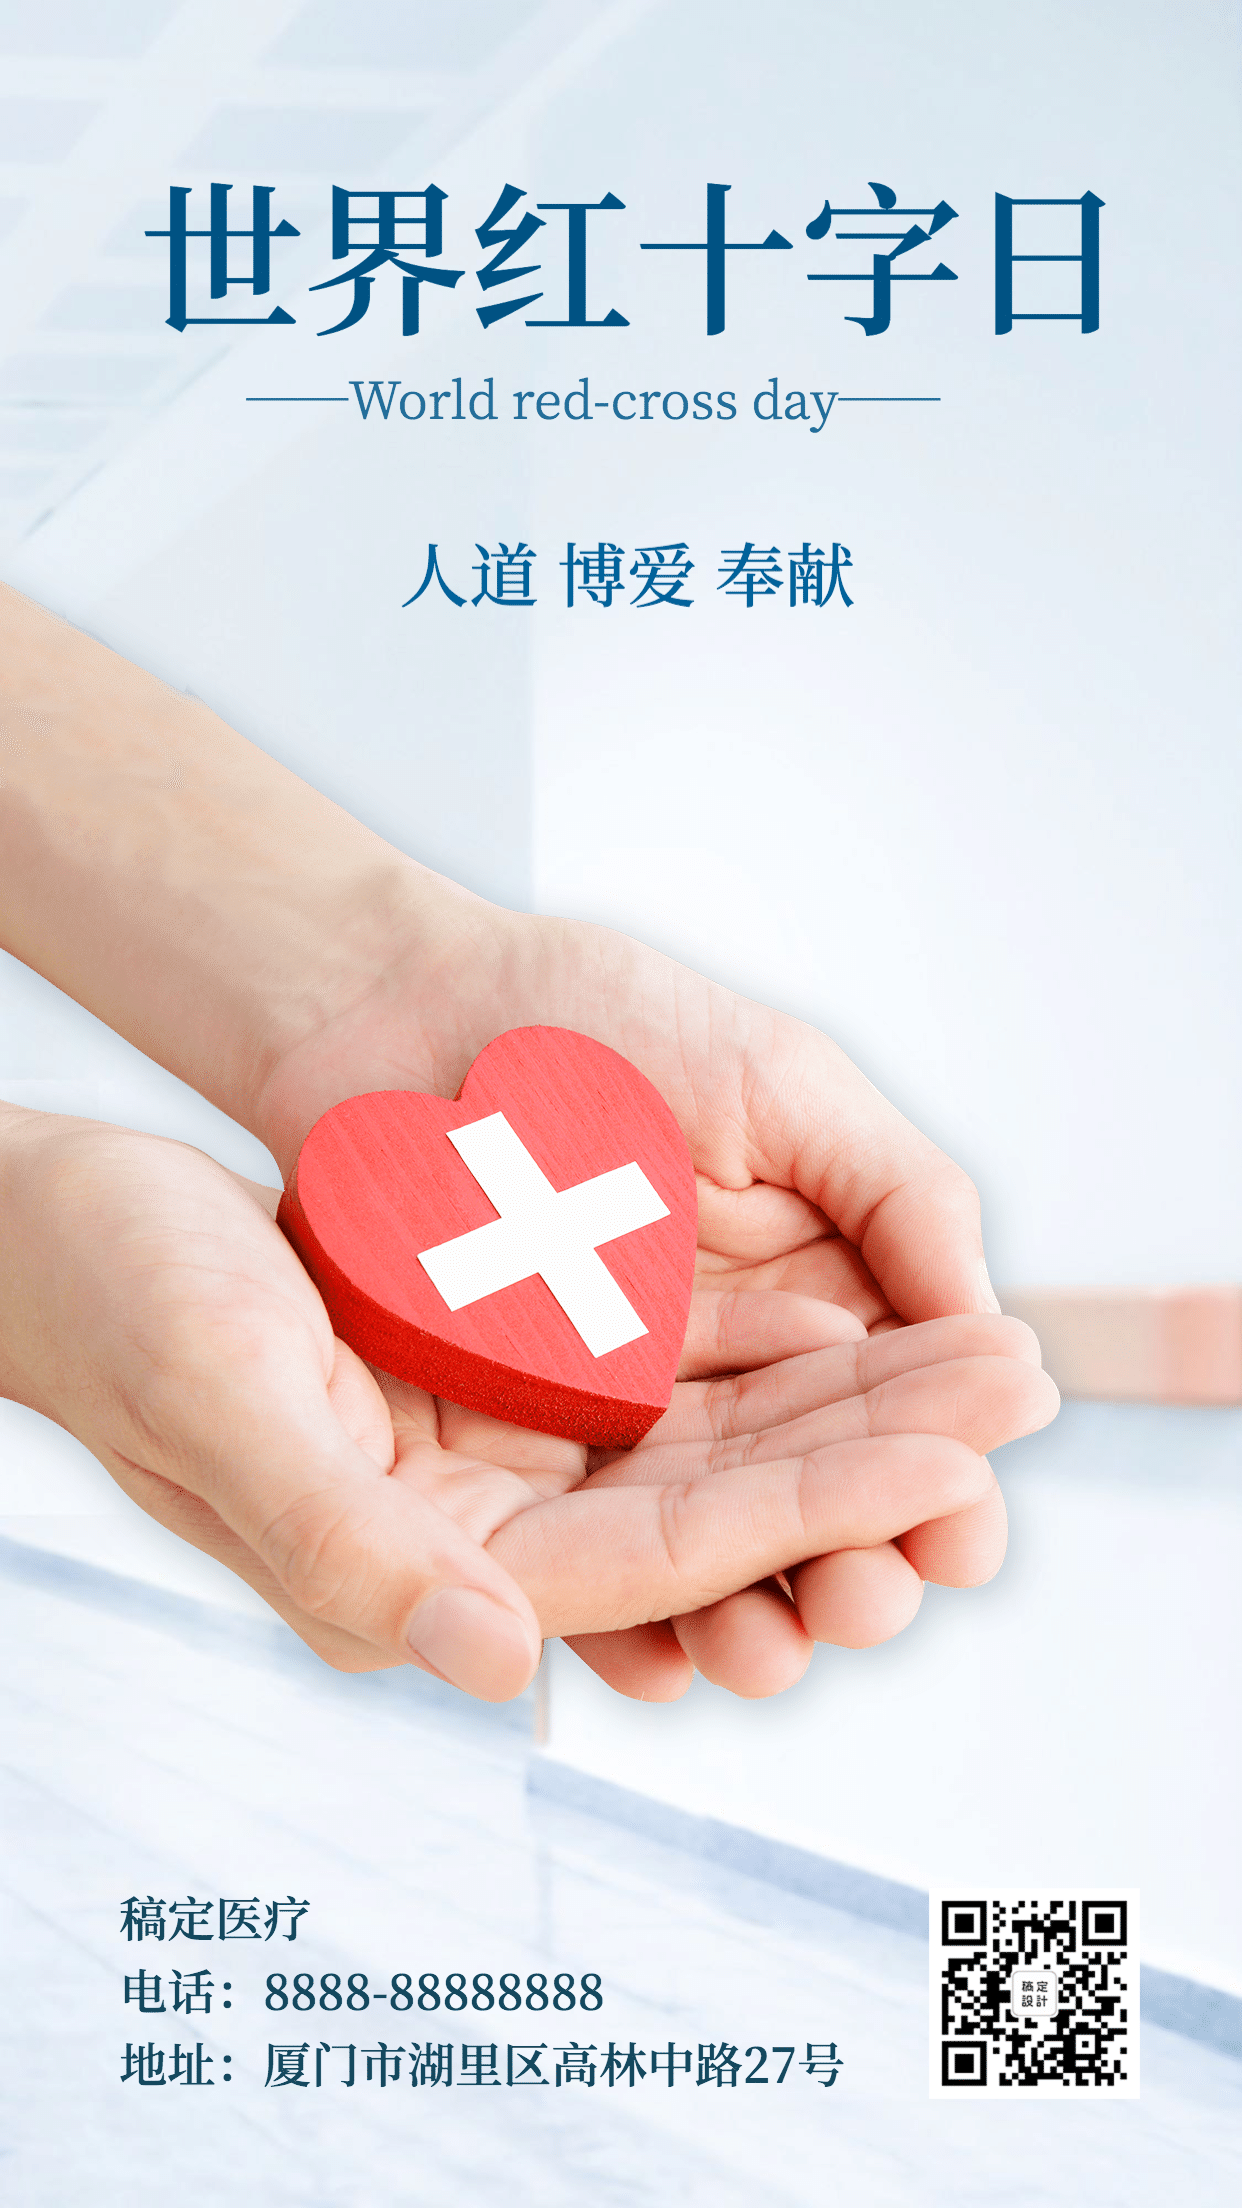 世界红十字日医疗公益手机海报预览效果